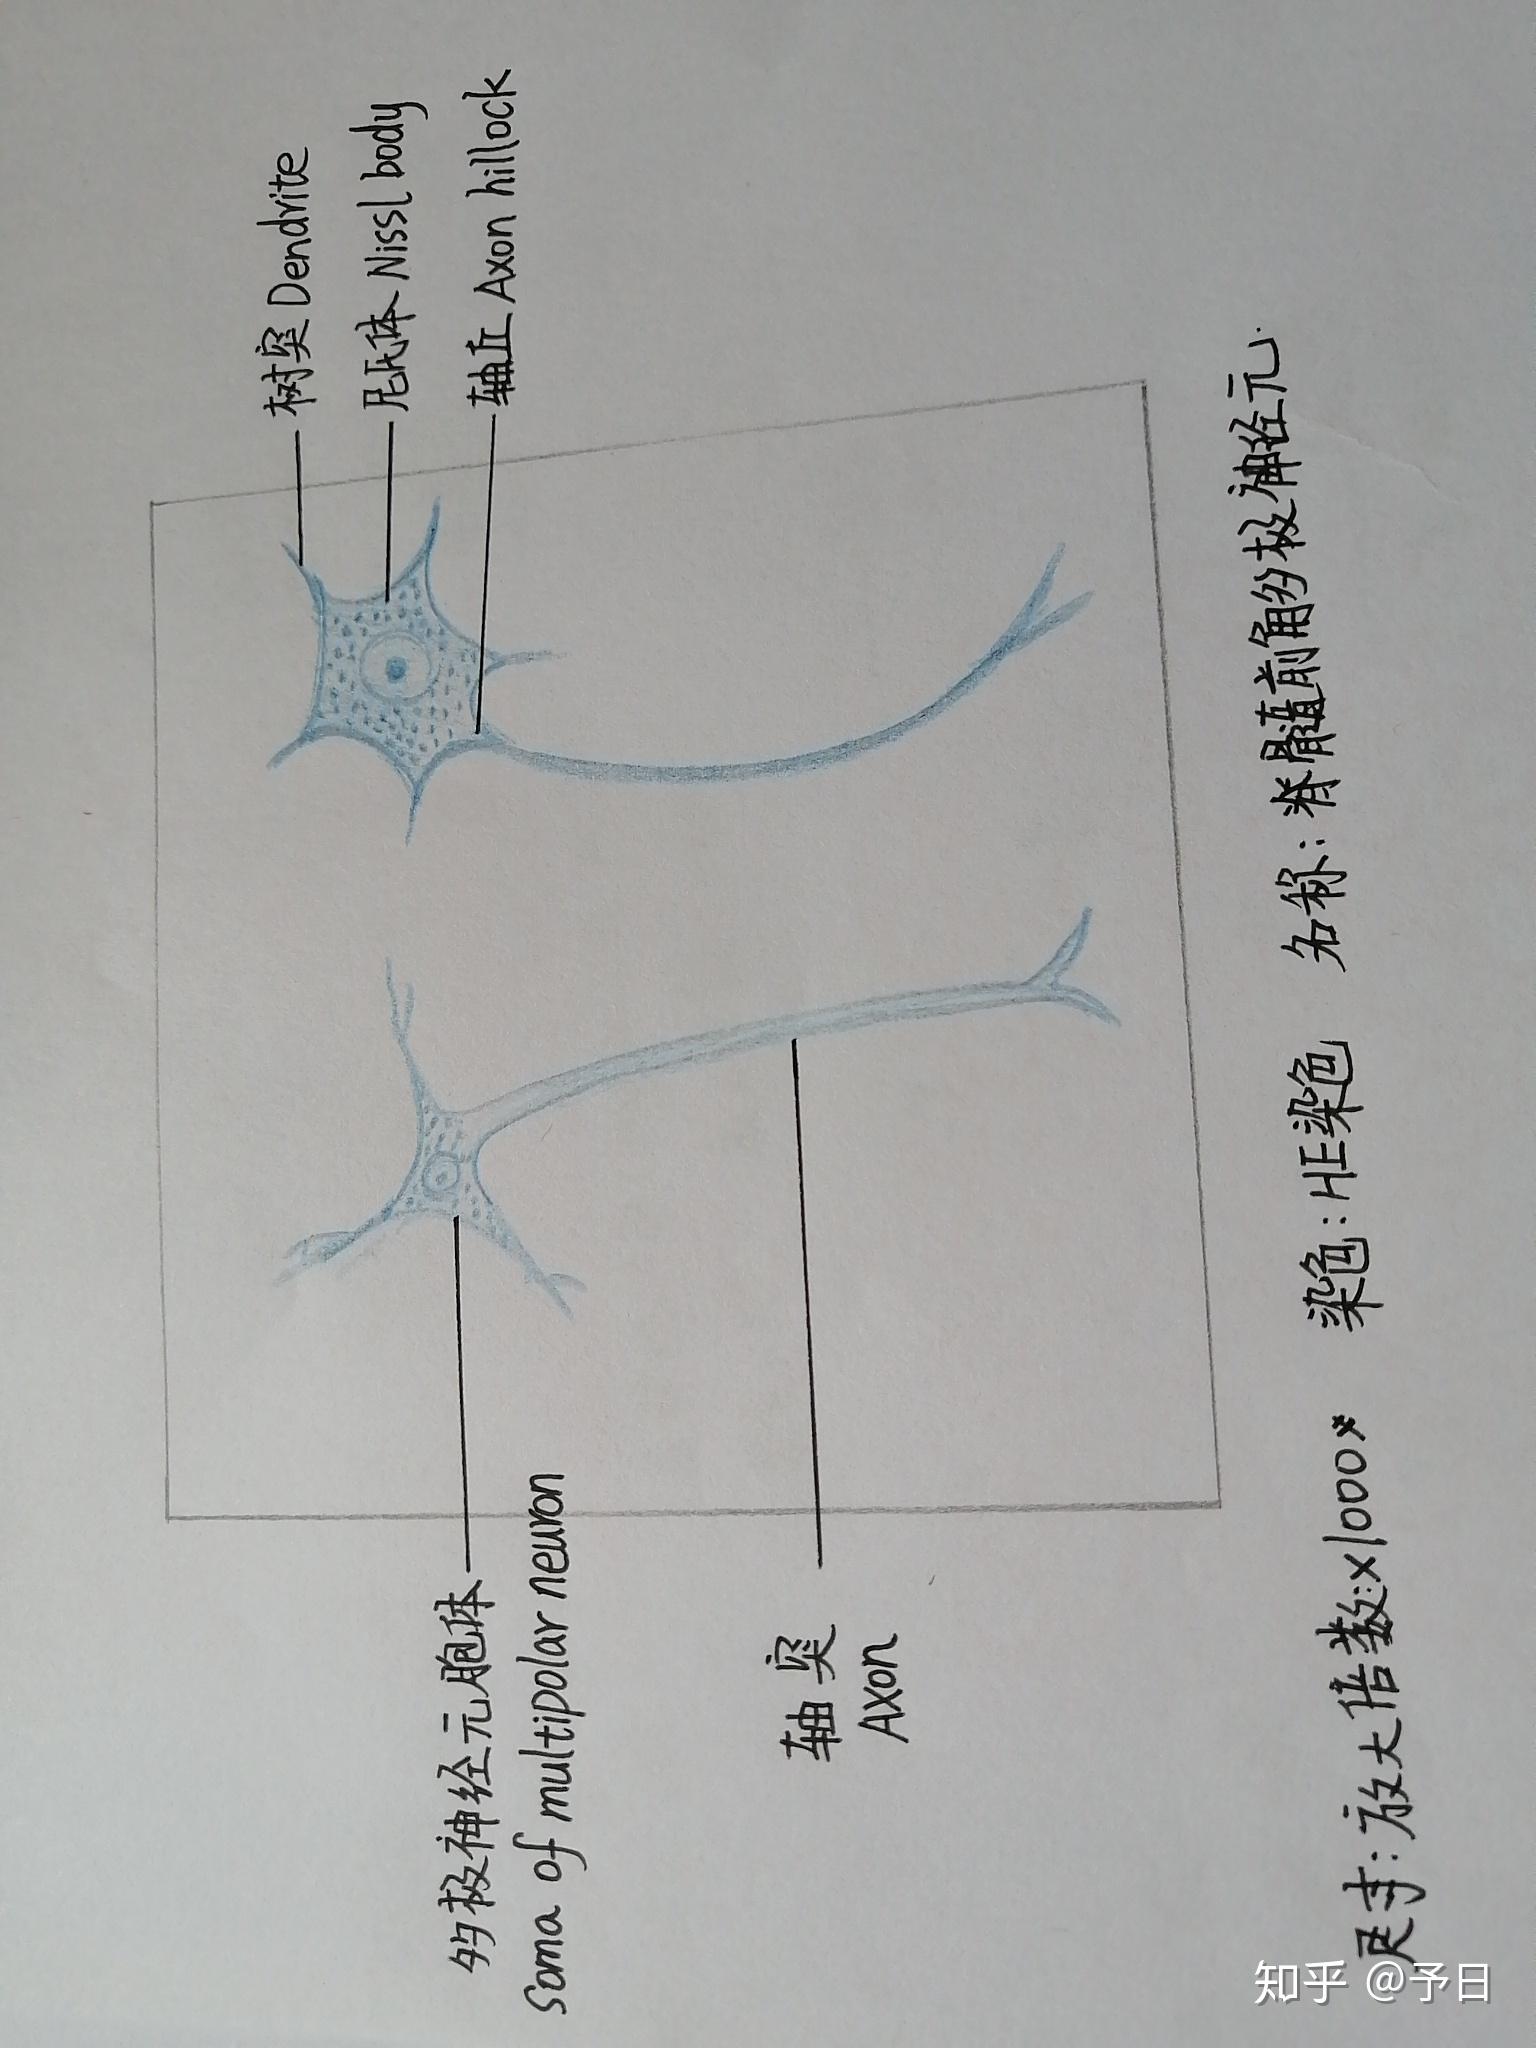 脊髓前角细胞图片图片